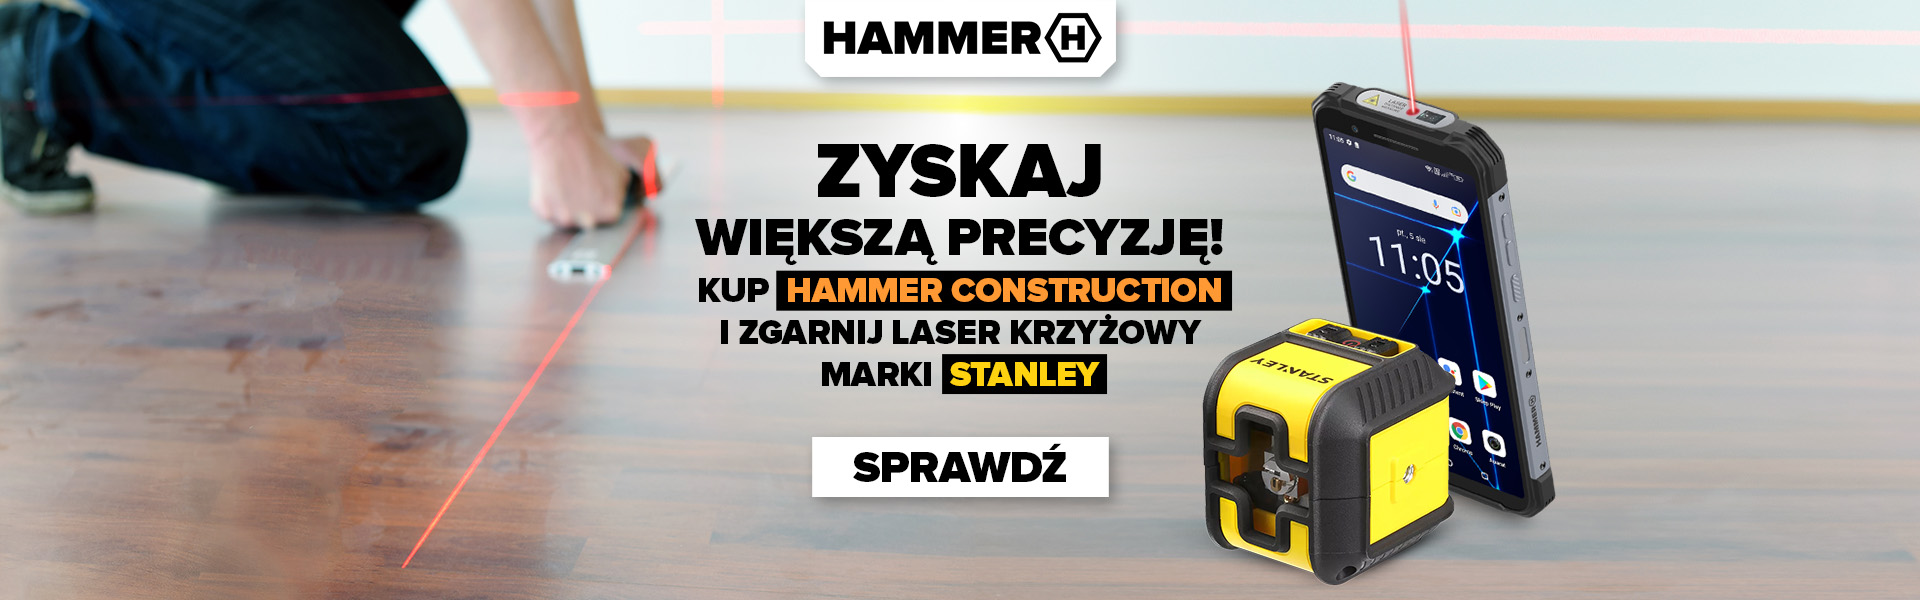 HAMMER Construction